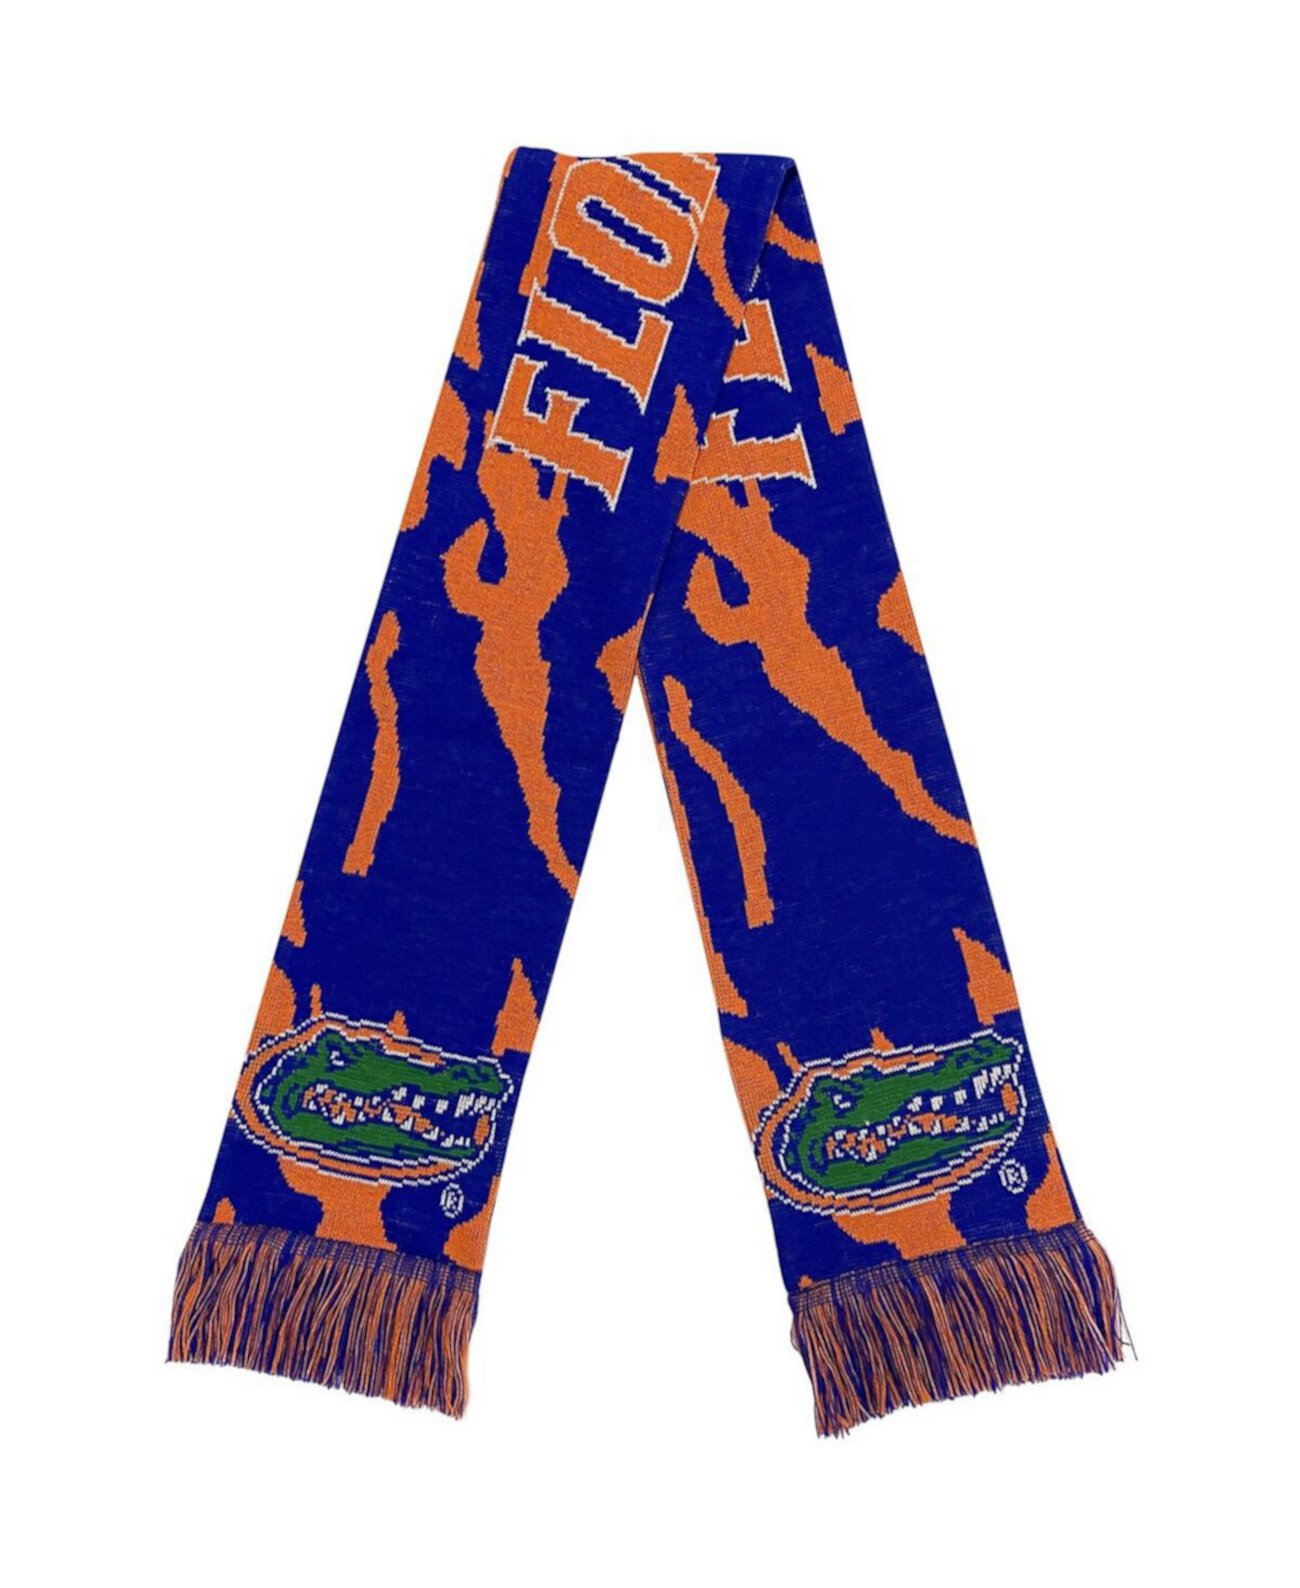 Тональный камуфляжный шарф Florida Gators для мужчин и женщин FOCO